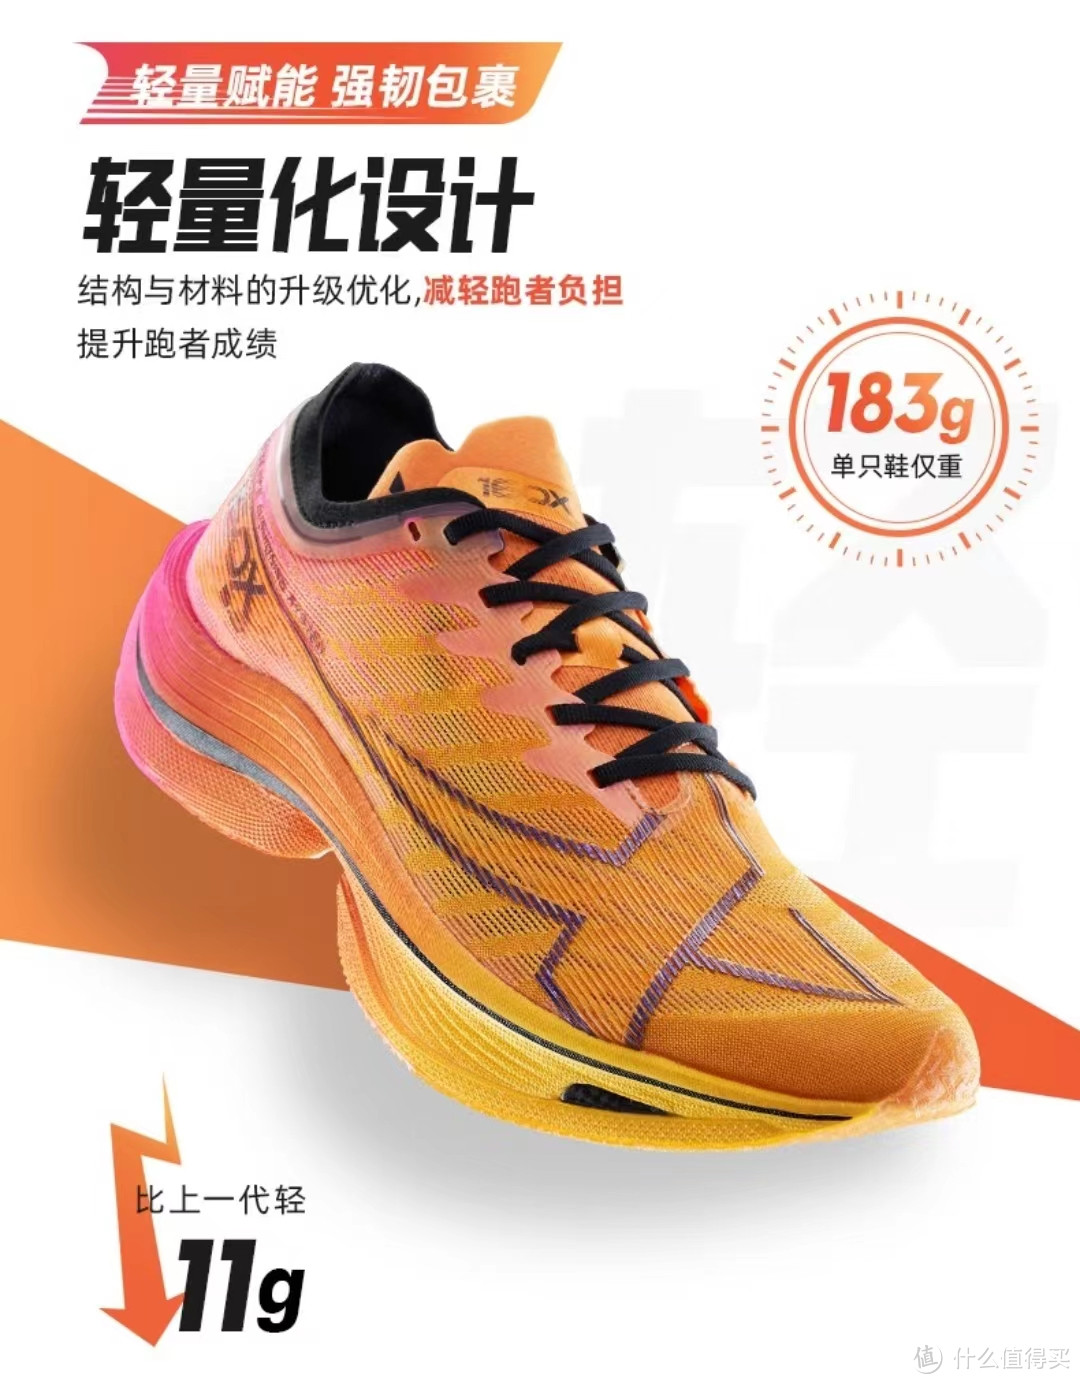 新一代冠军跑鞋——特步160X 5.0